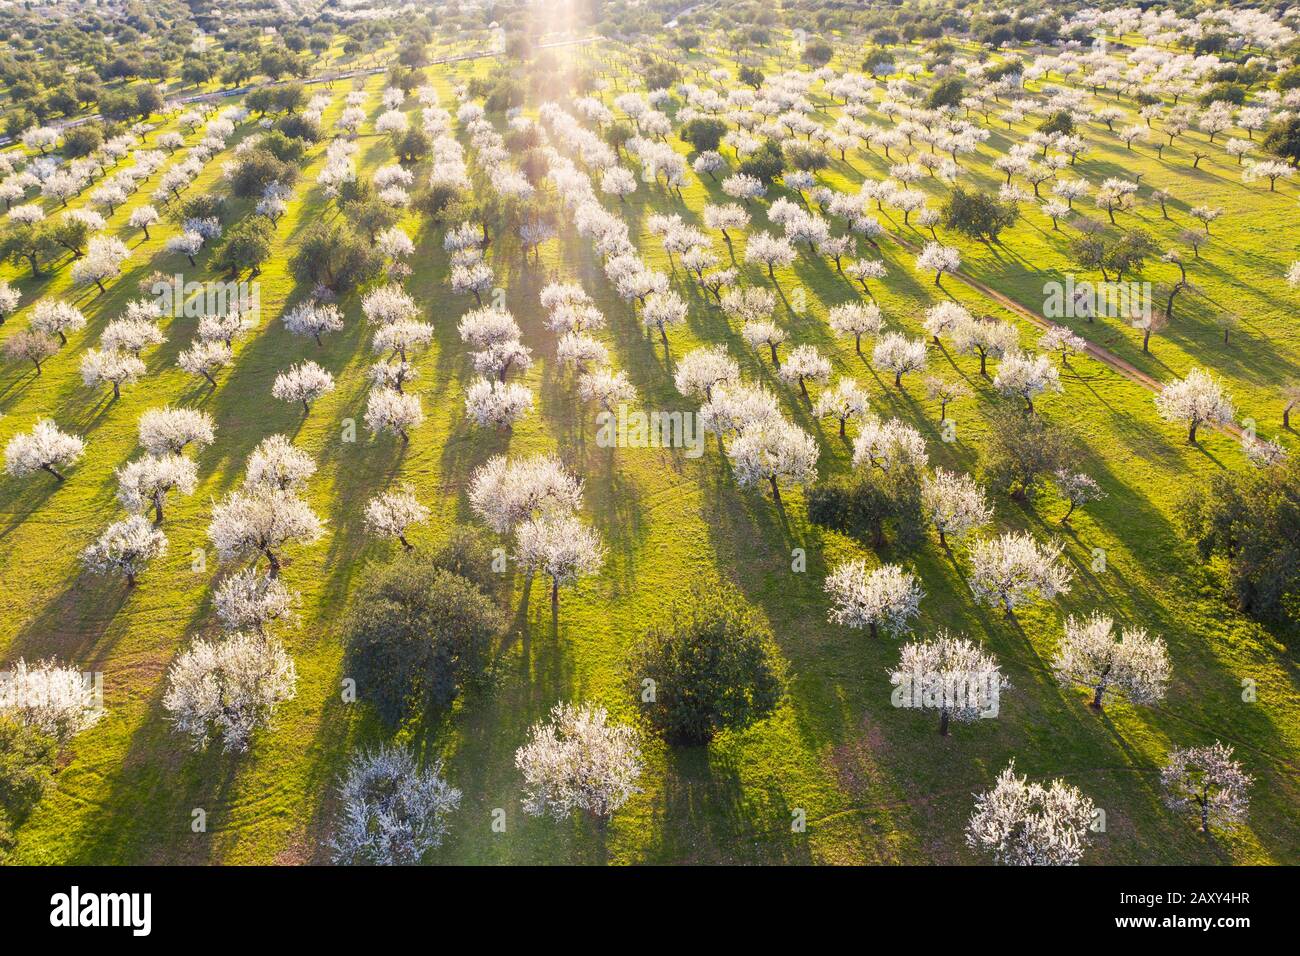 Almendros, almendros en flor, almendros en flor, plantación de almendros cerca de Bunyola, vista aérea, Mallorca, Islas Baleares, España Foto de stock